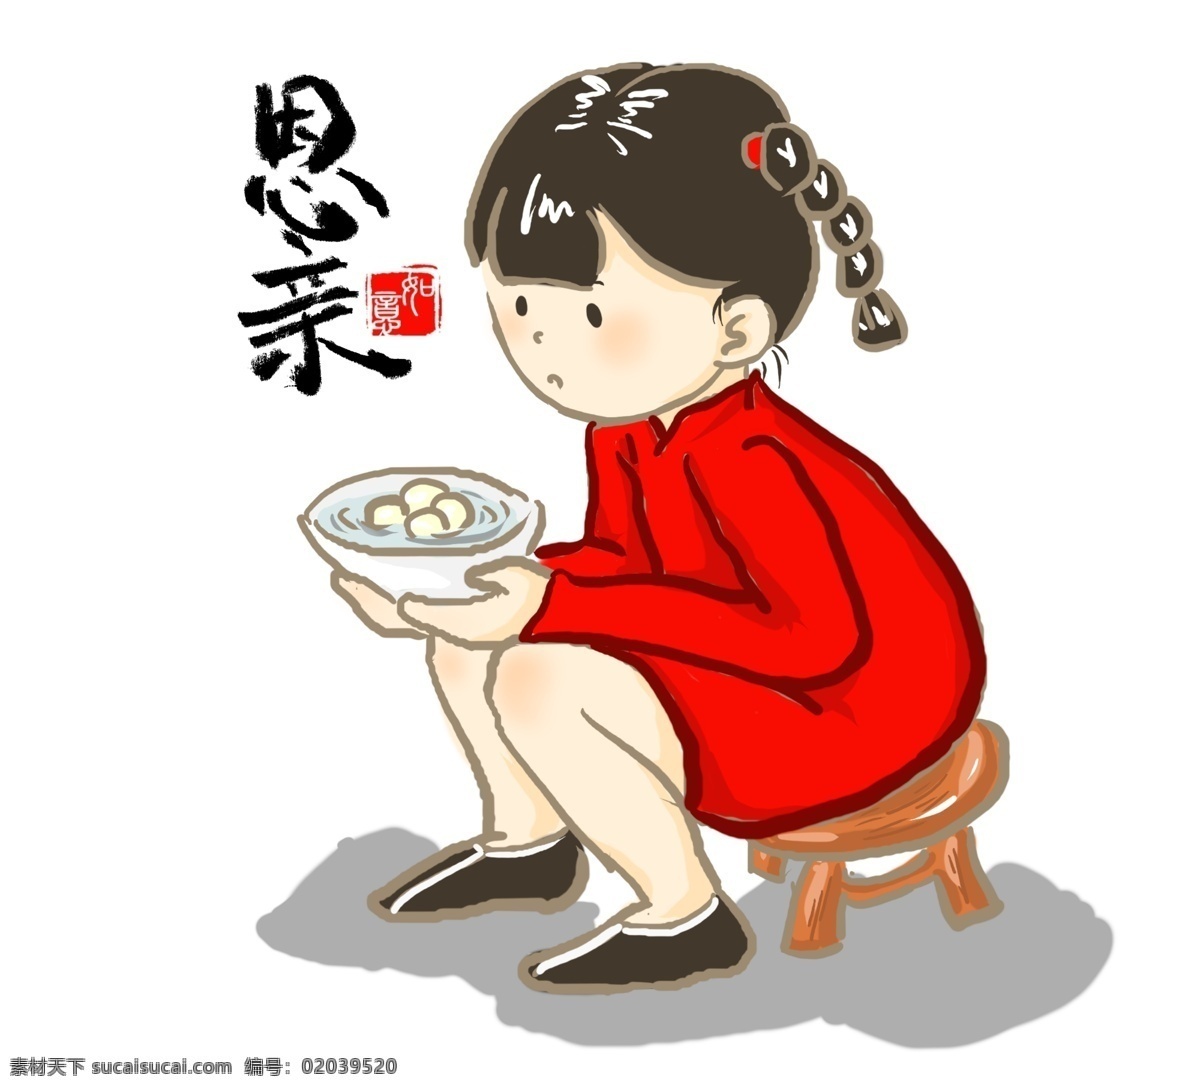 吃 汤圆 思亲 卡通 小女孩 手绘 形象 吃汤圆 中国风 每逢佳节倍思亲 思念 团圆